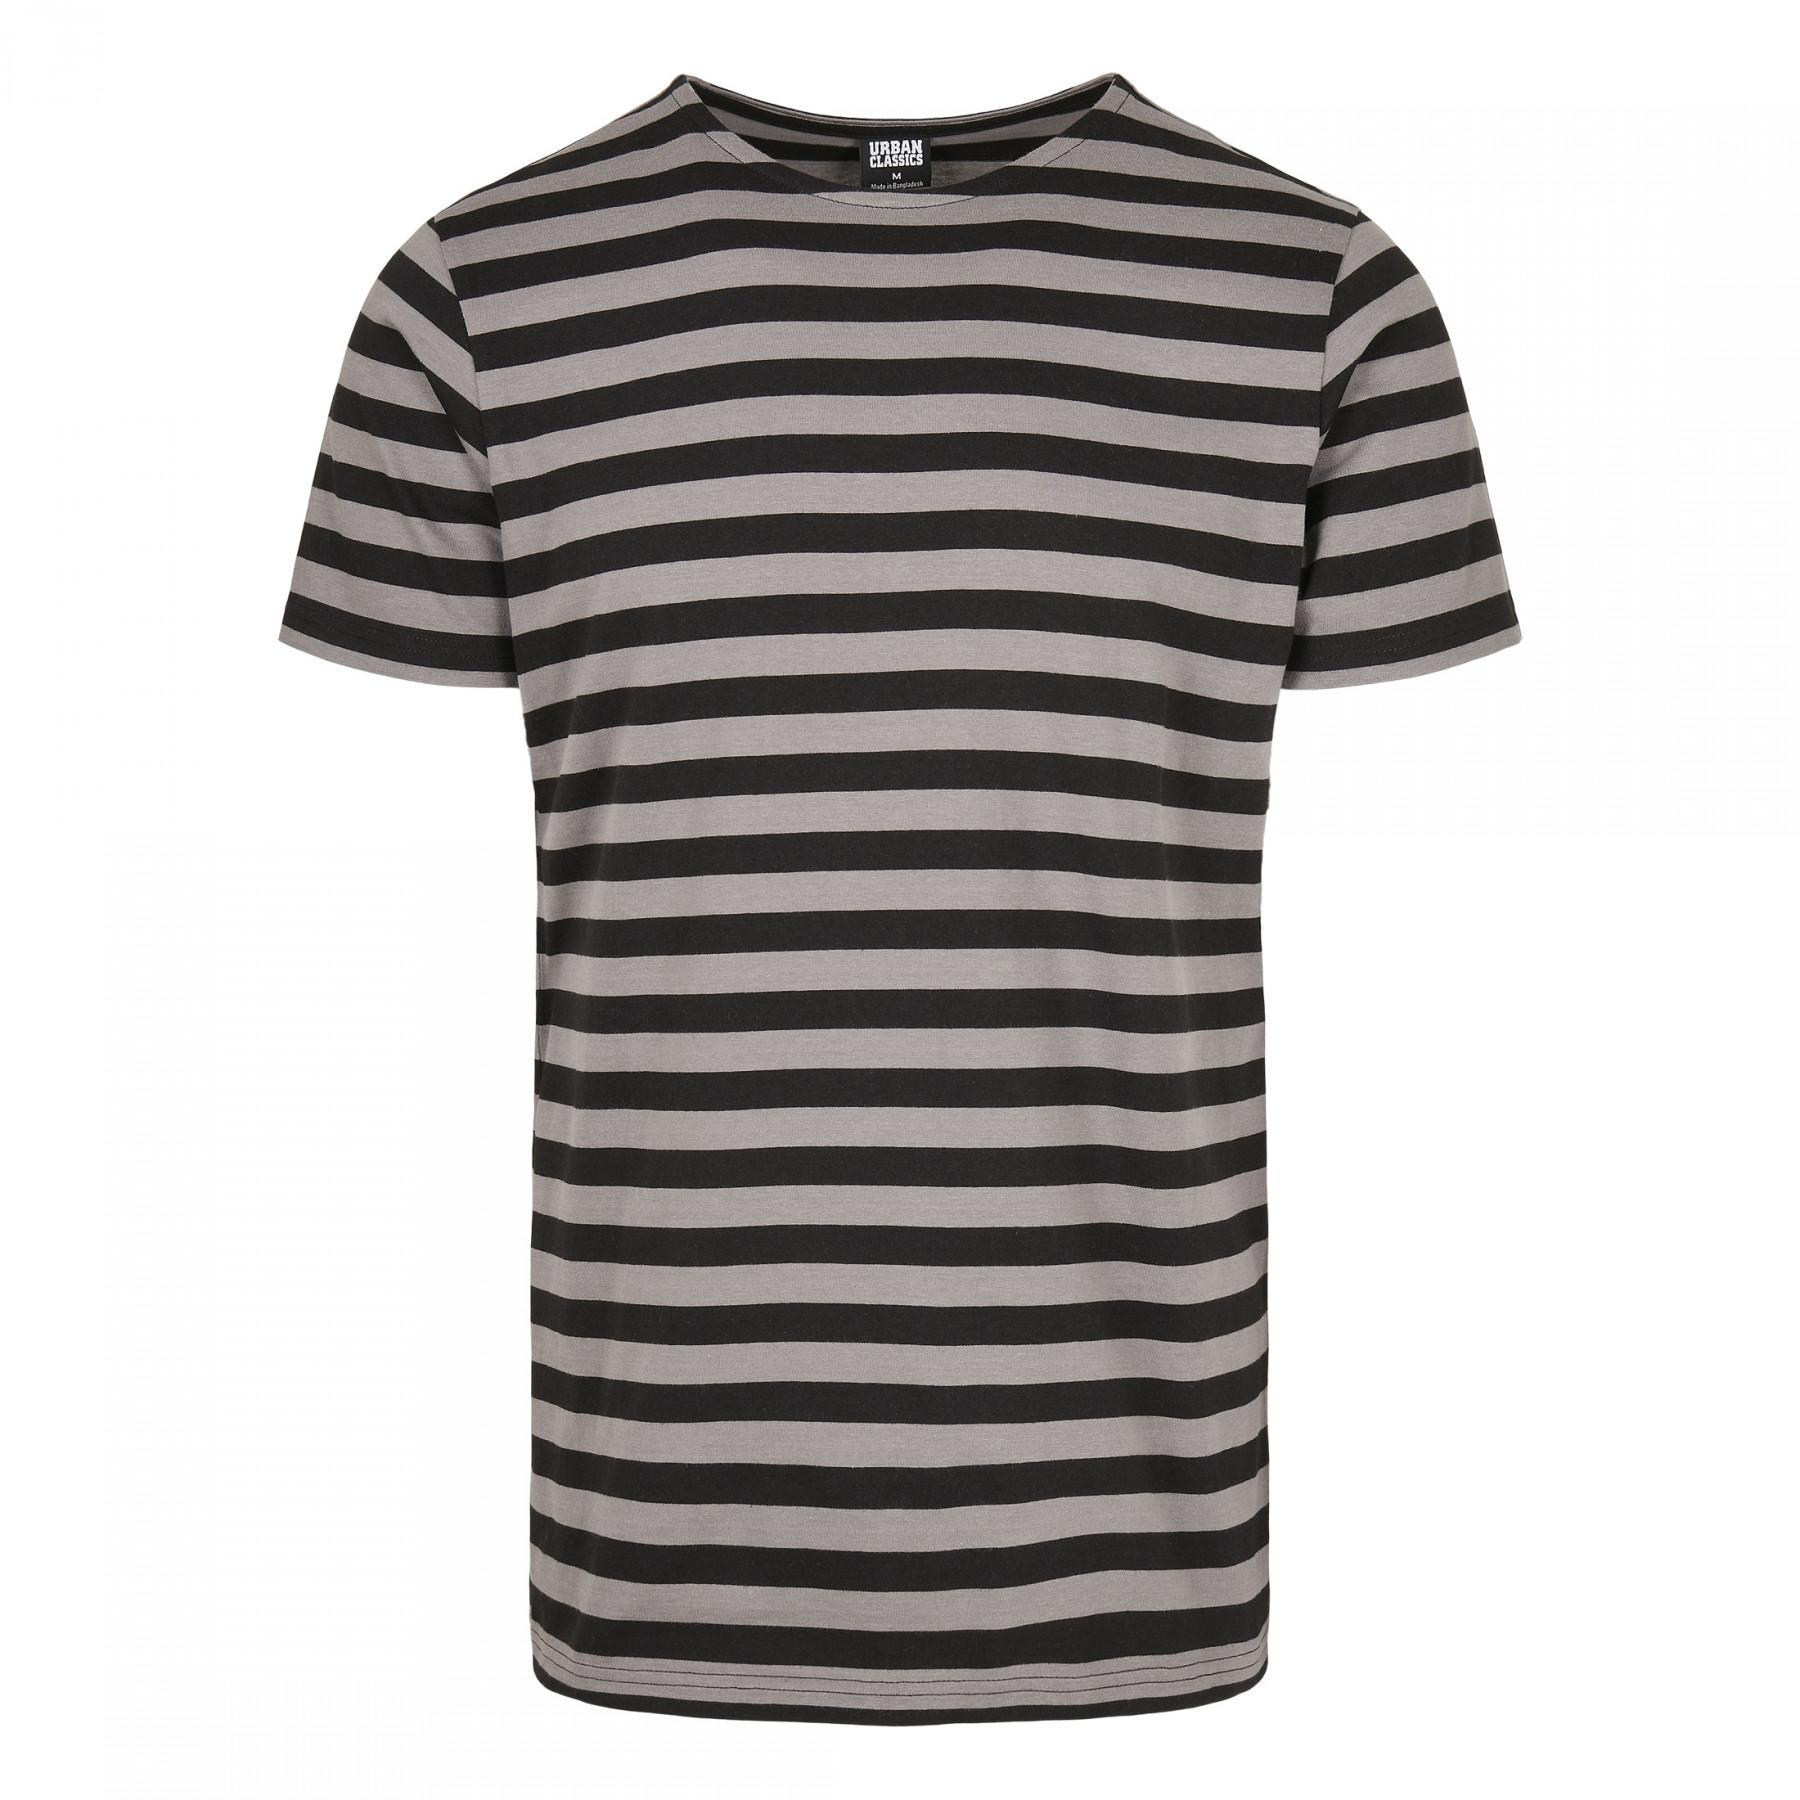 Camiseta Urban Classics stripe (tamaños grandes)